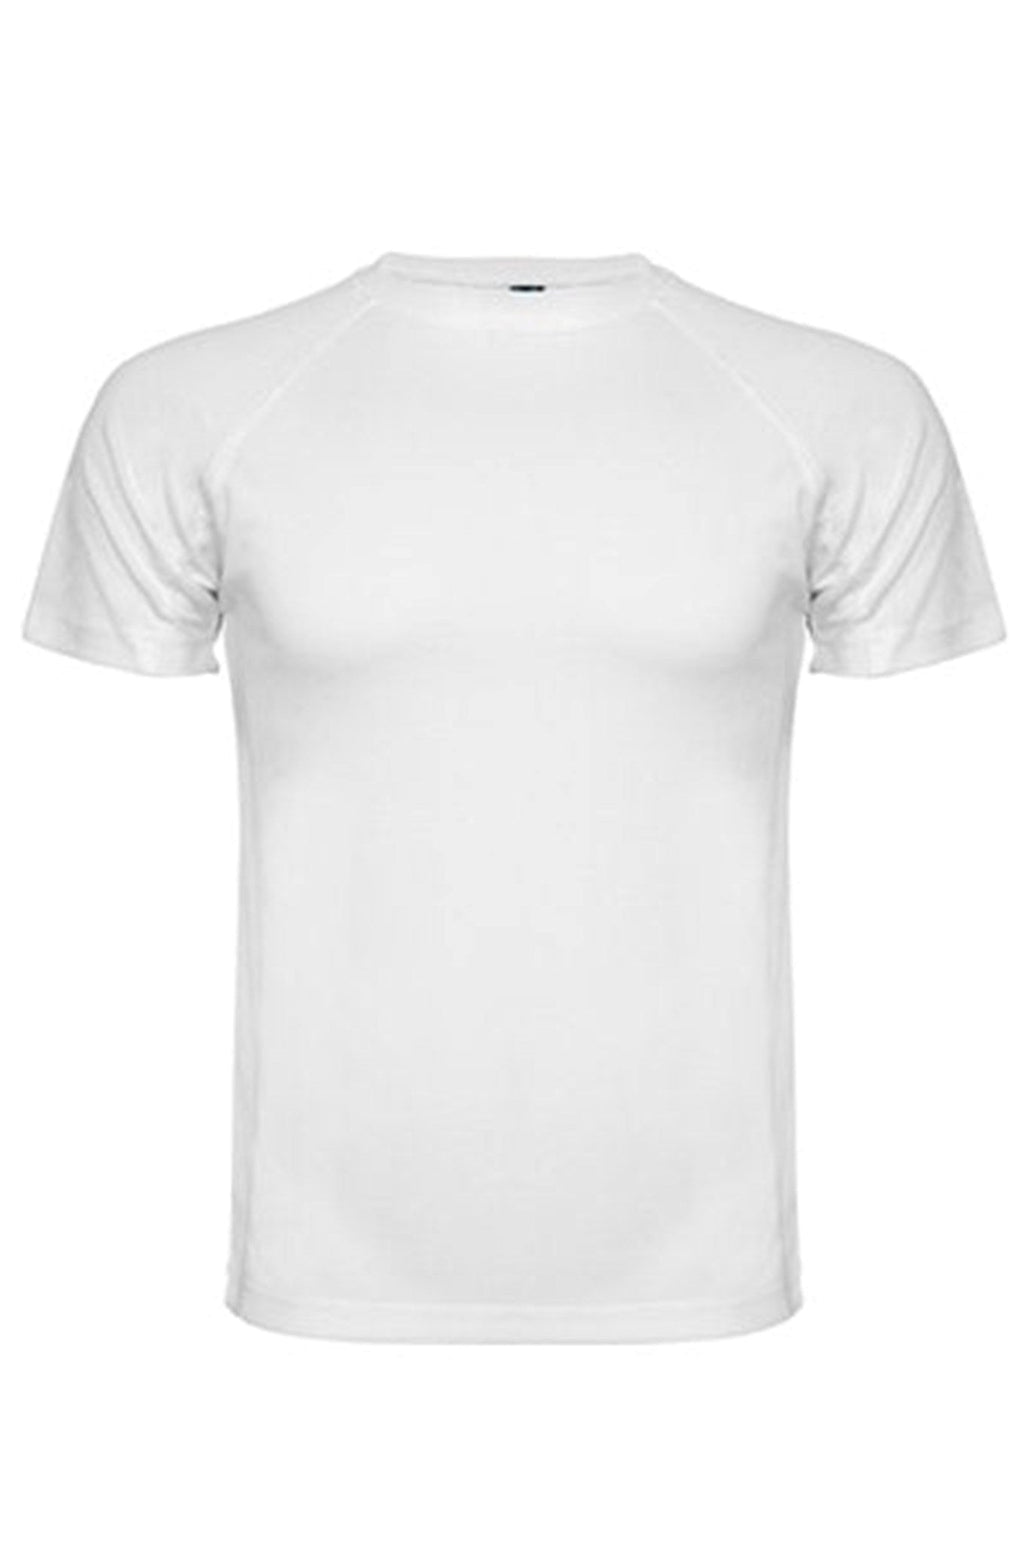 Treniruotės marškinėliai - balti